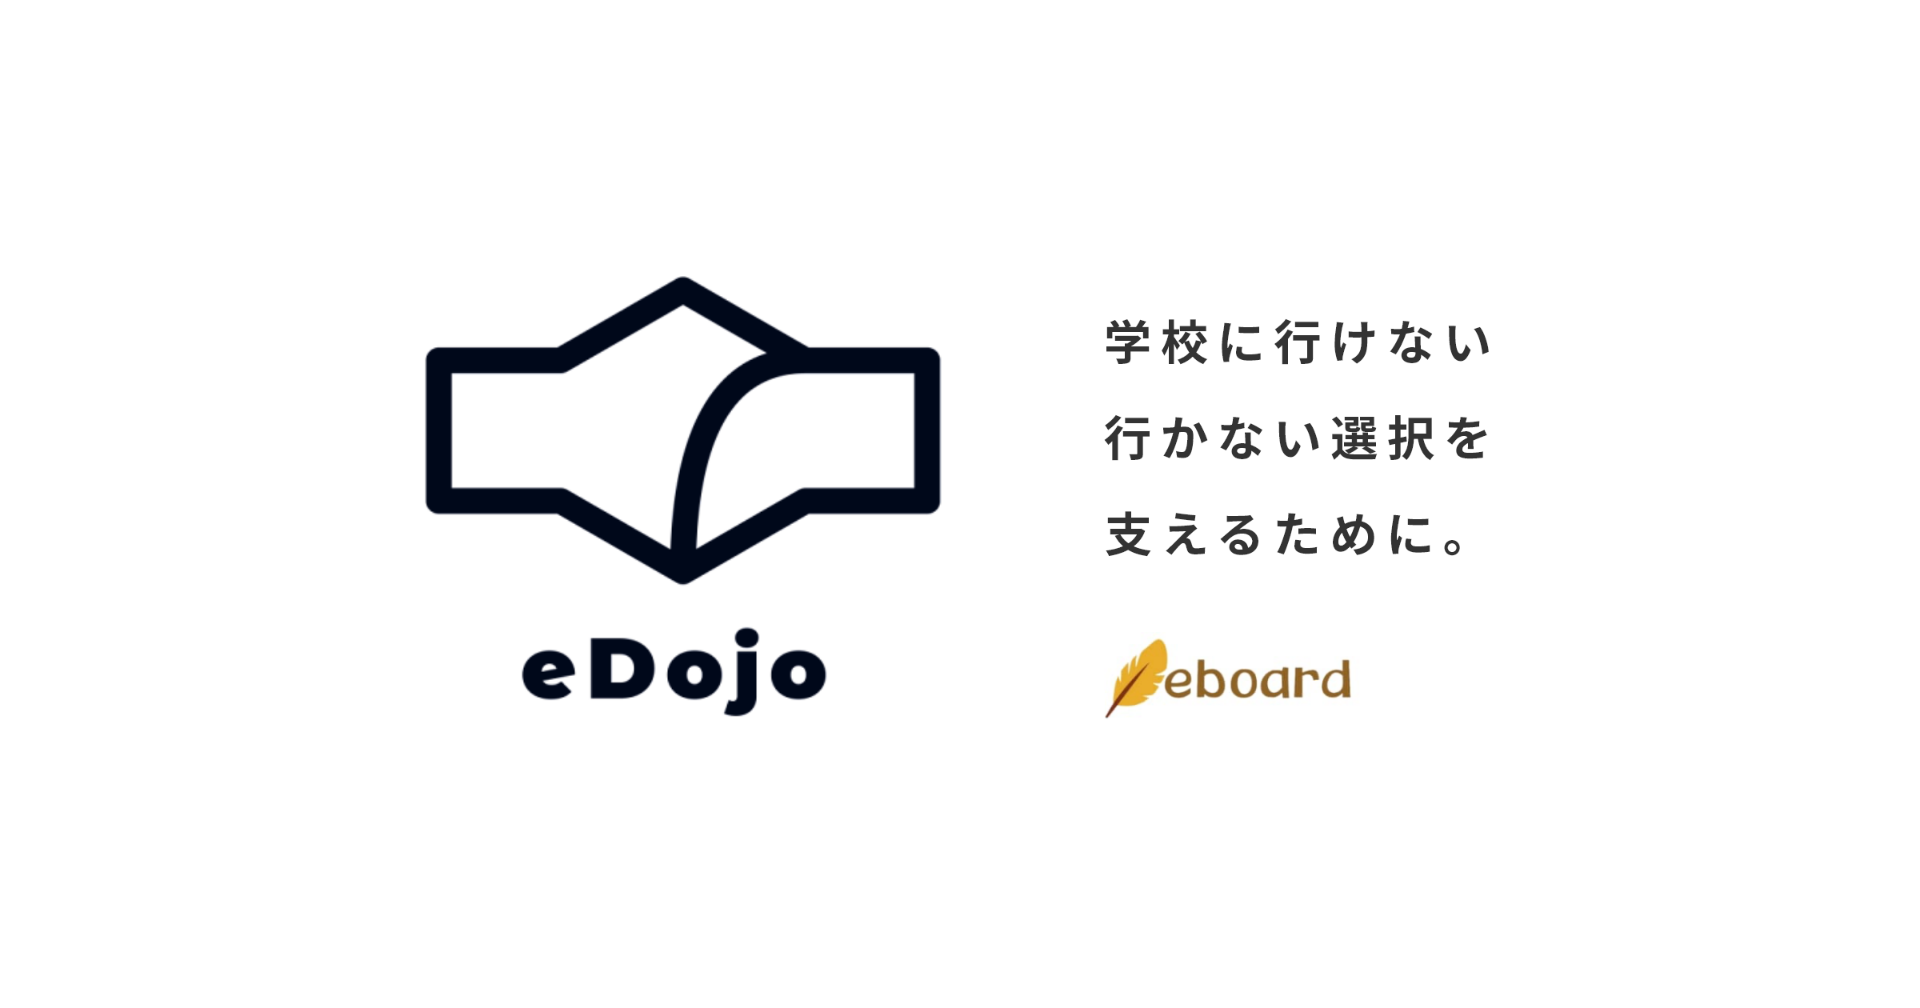 eDojo ホームページを公開しました